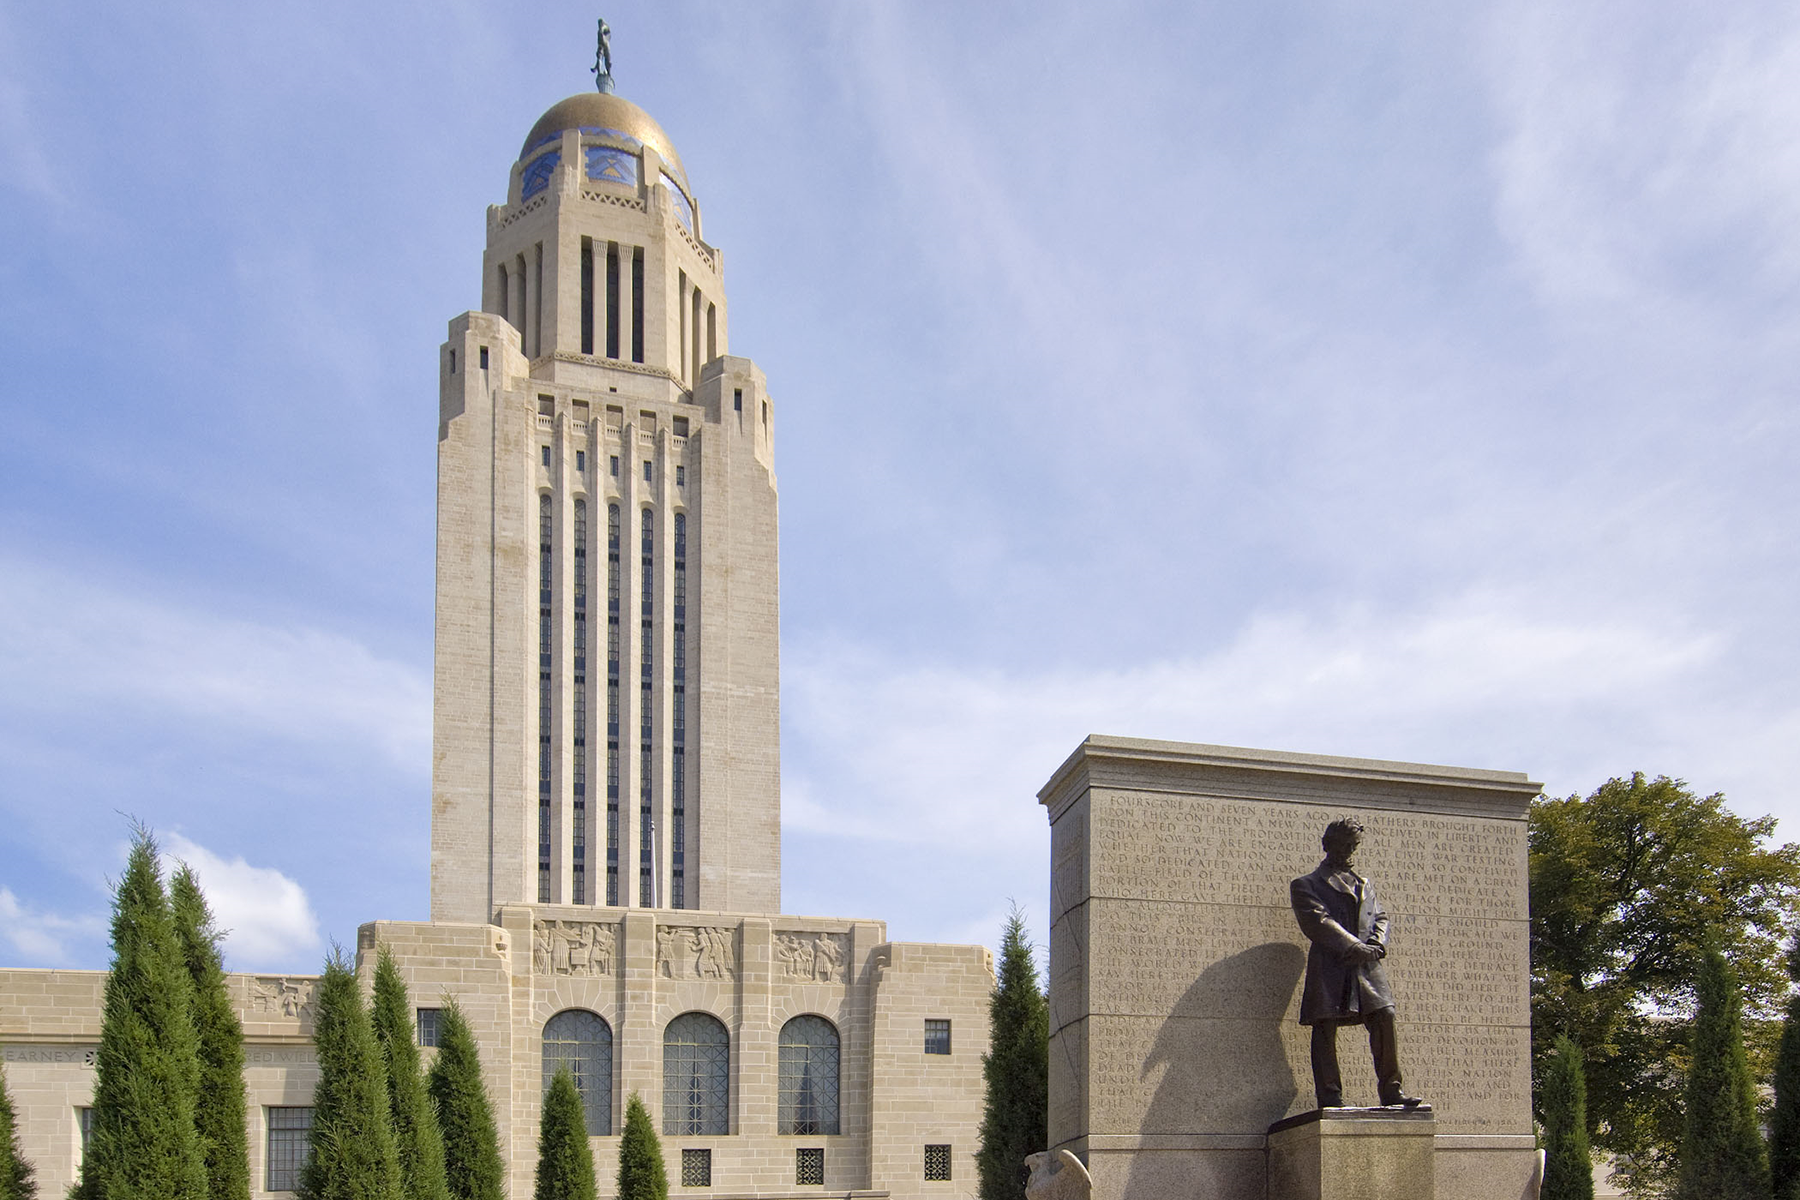 Explorez la ville du Nebraskas nommée pour le 16e président 